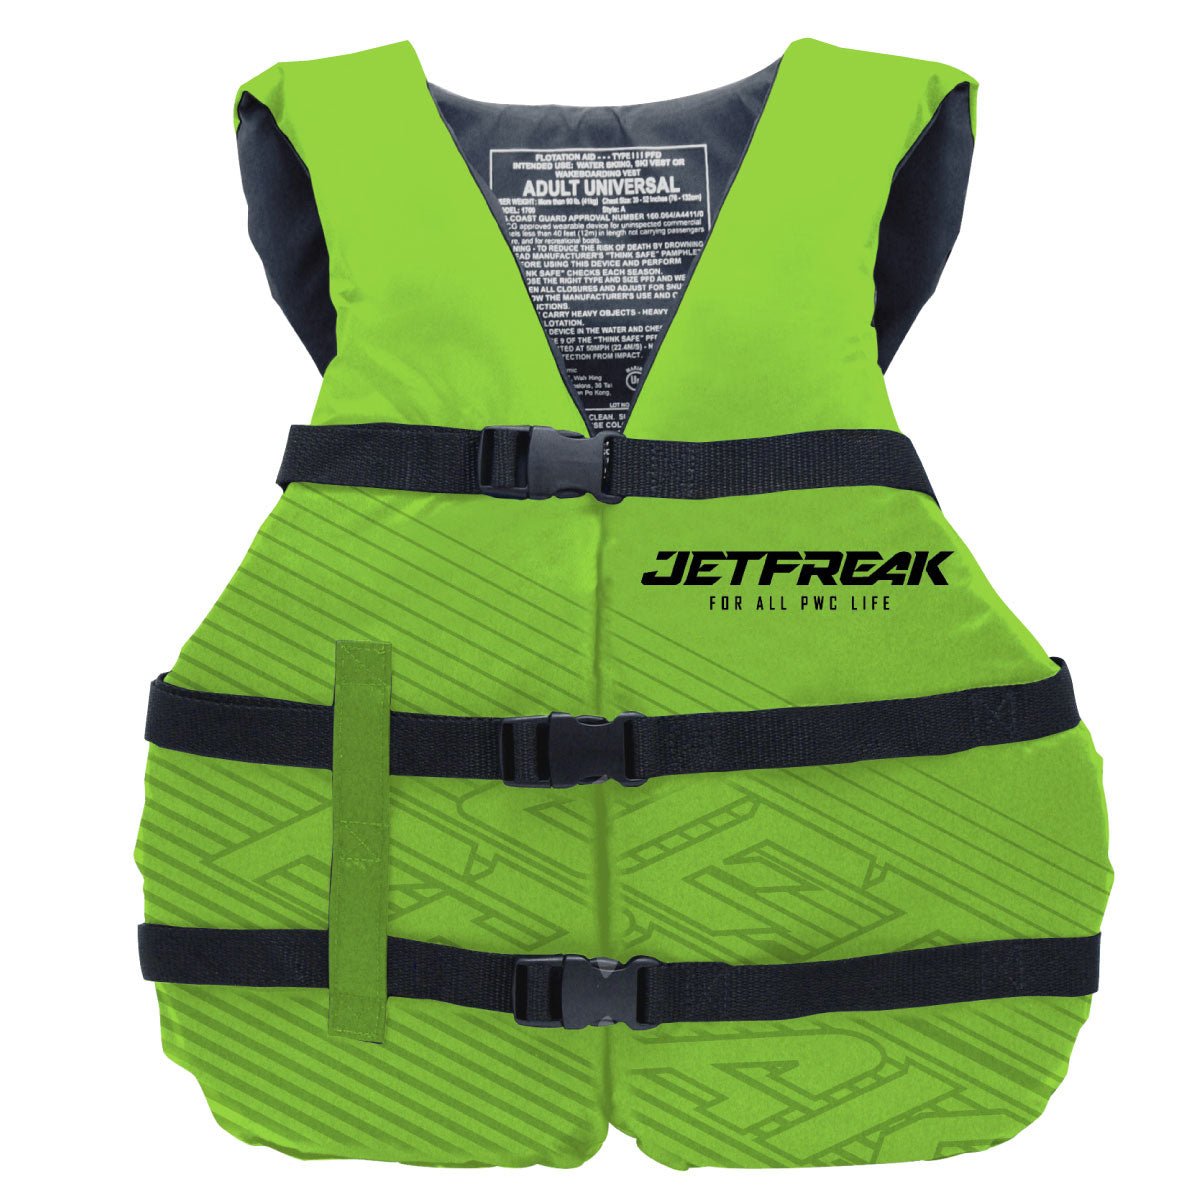 JETFREAK ライフジャケット BATTEREFLY VEST 簡易タイプ  ジェットスキー 水上バイク 救命胴衣  ブラック FLV-2203